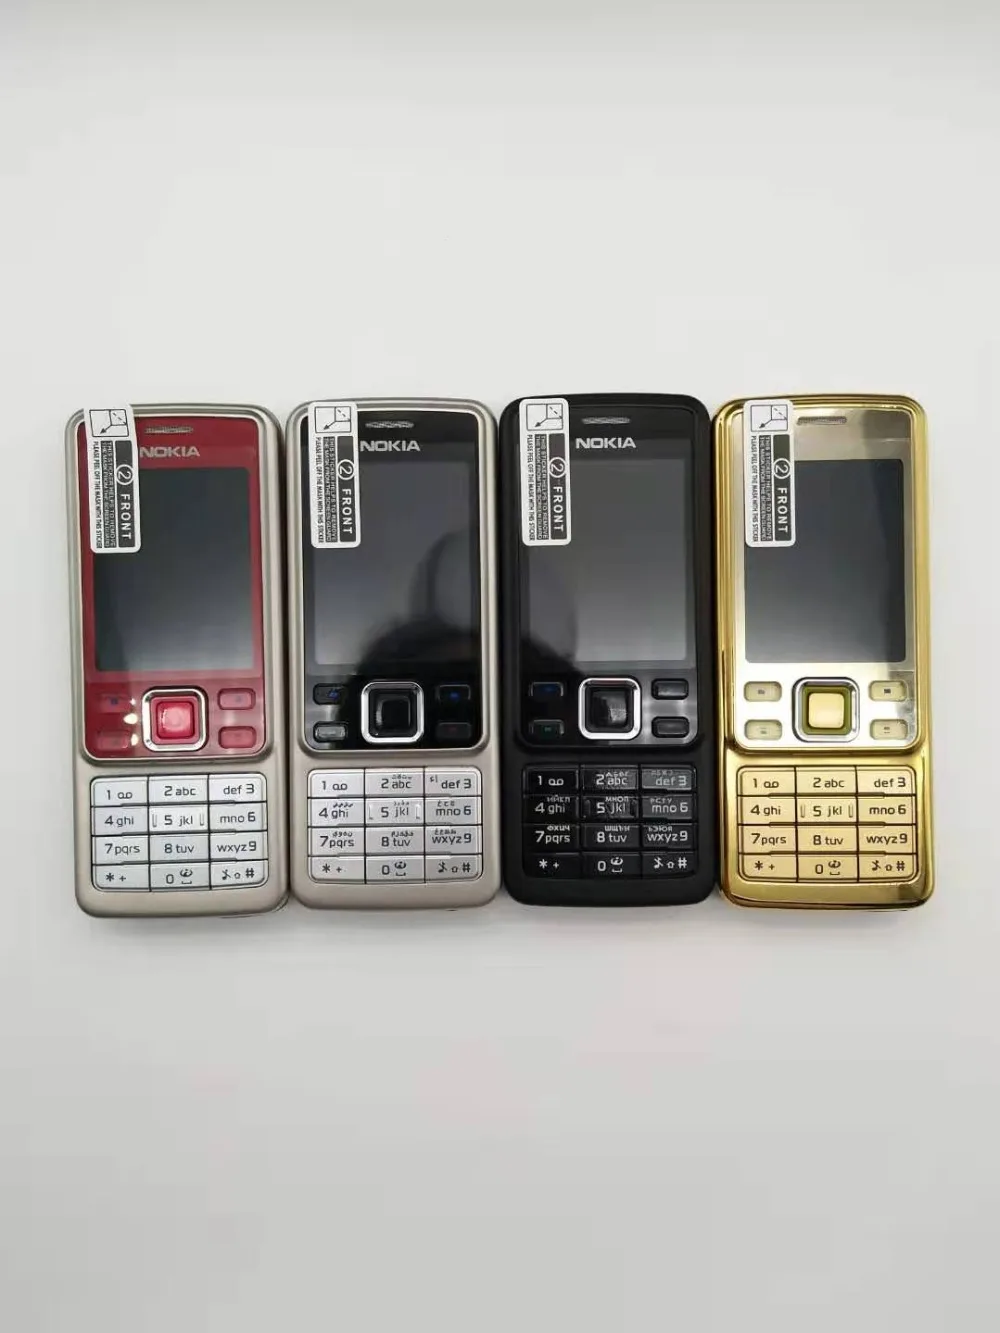 Мобильный телефон Nokia 6300, классический мобильный телефон, 6300 золото, один год гарантии, русская клавиатура, арабская клавиатура